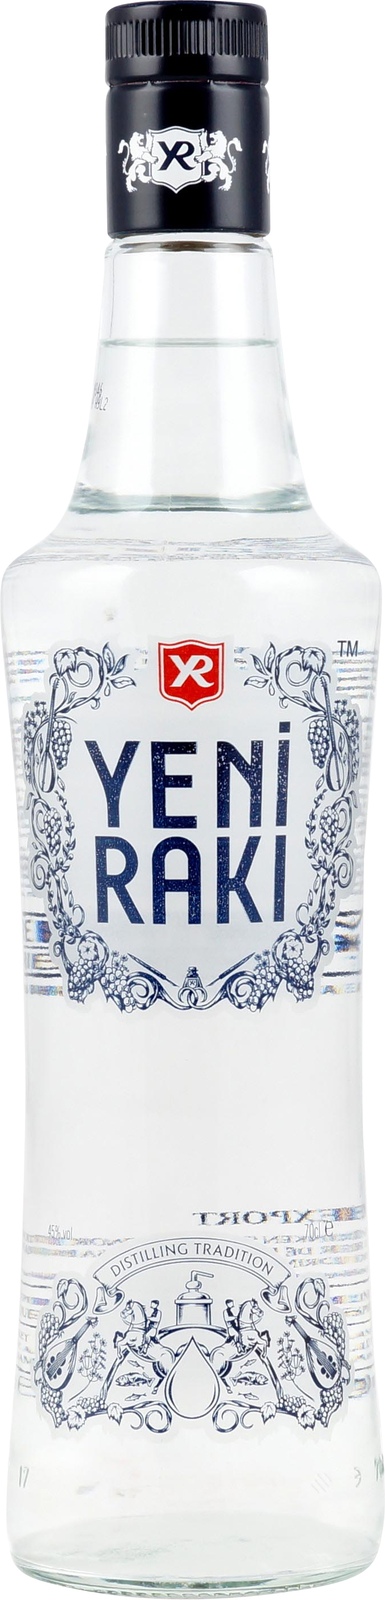 Yeni Raki aus der Türkei günstig im Shop kaufen.